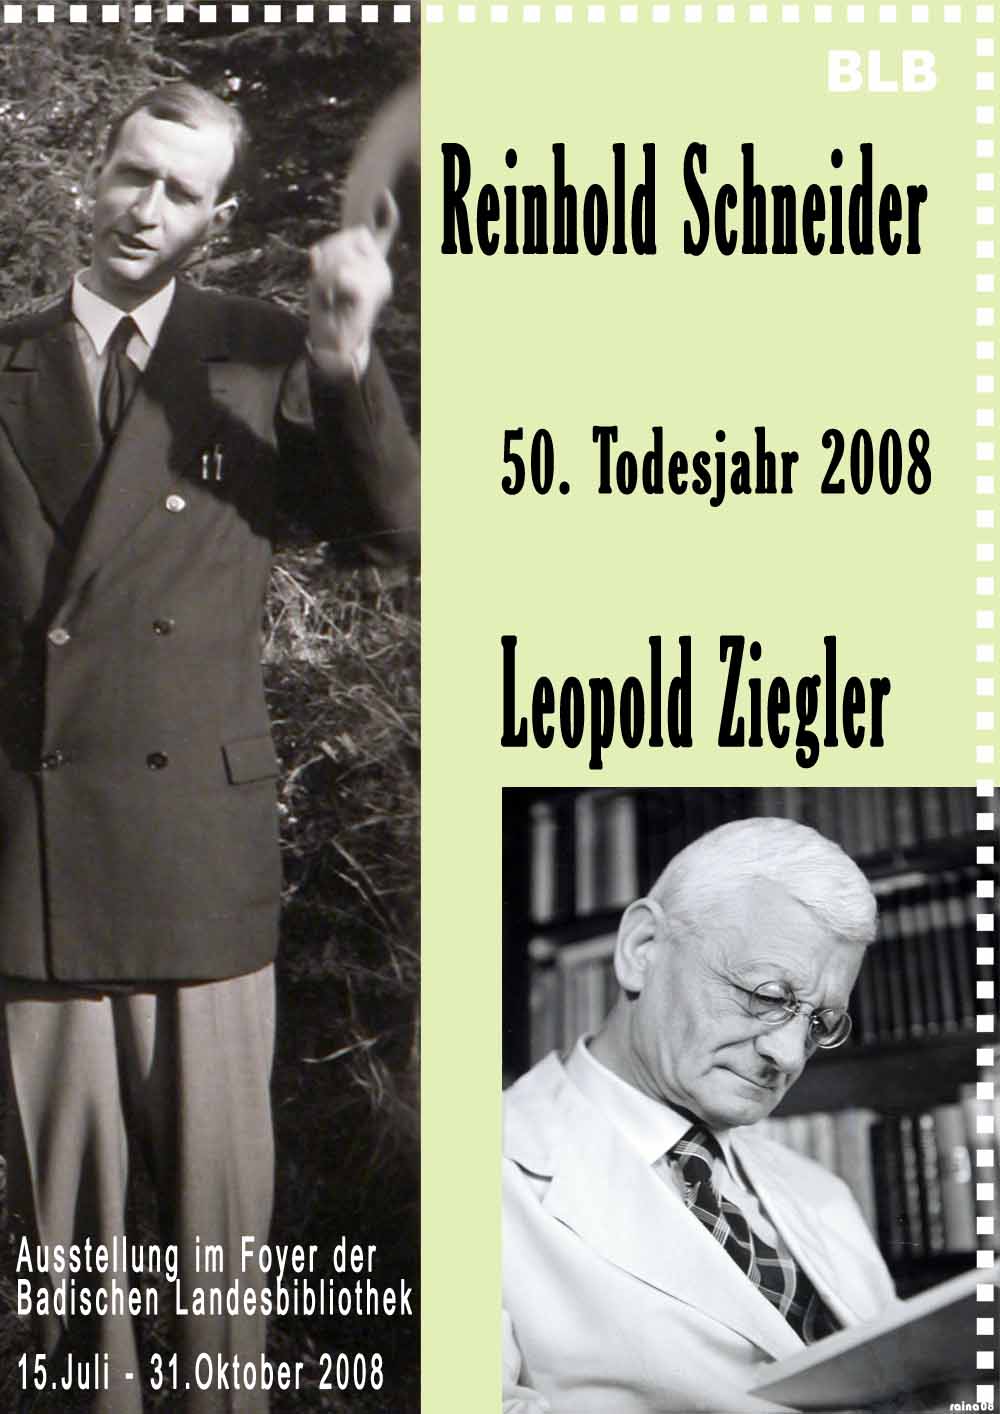 Das Plakat zeigt zwei Fotografien von Reinold Schneider. Als jungr Mann, wie auch als älterer. Ergänzt werden die Bilder durch Textinformationen zur Ausstellung. 